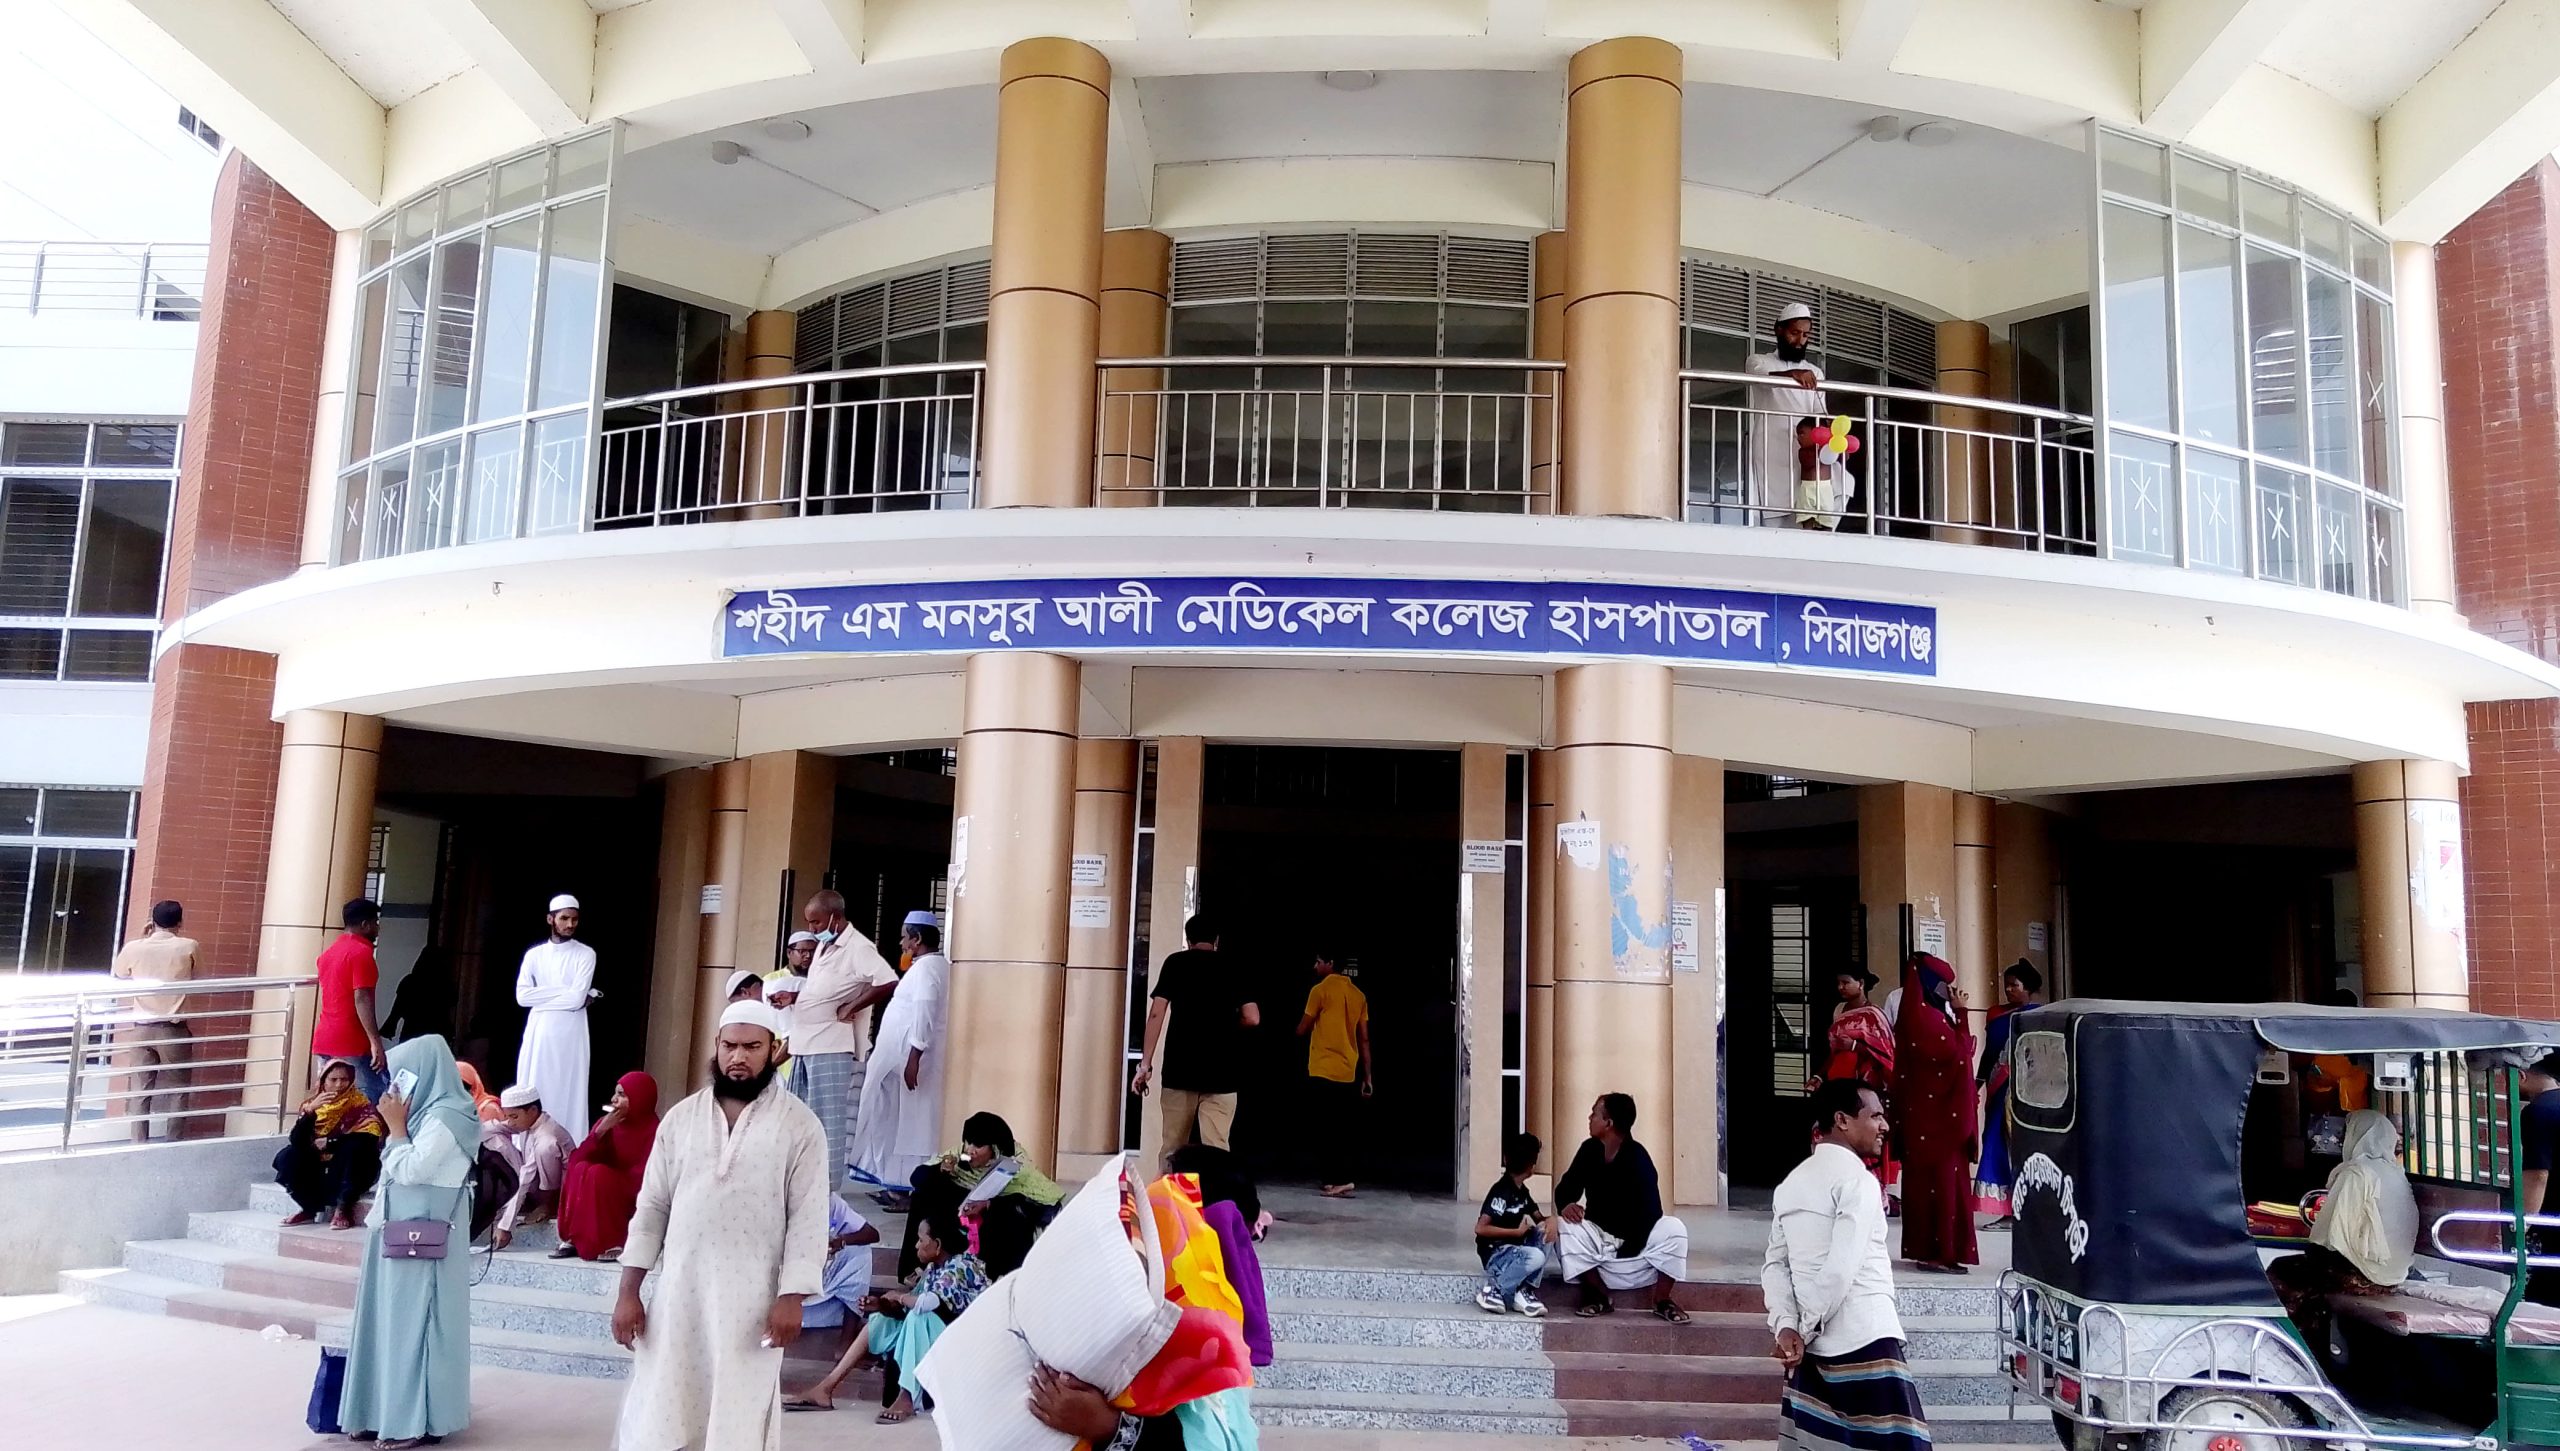 শহীদ এম মনসুর আলী মেডিক্যাল কলেজ হাসপাতালে আট মাস ধরে পড়ে আছে মূল্যবান যন্ত্রপাতি